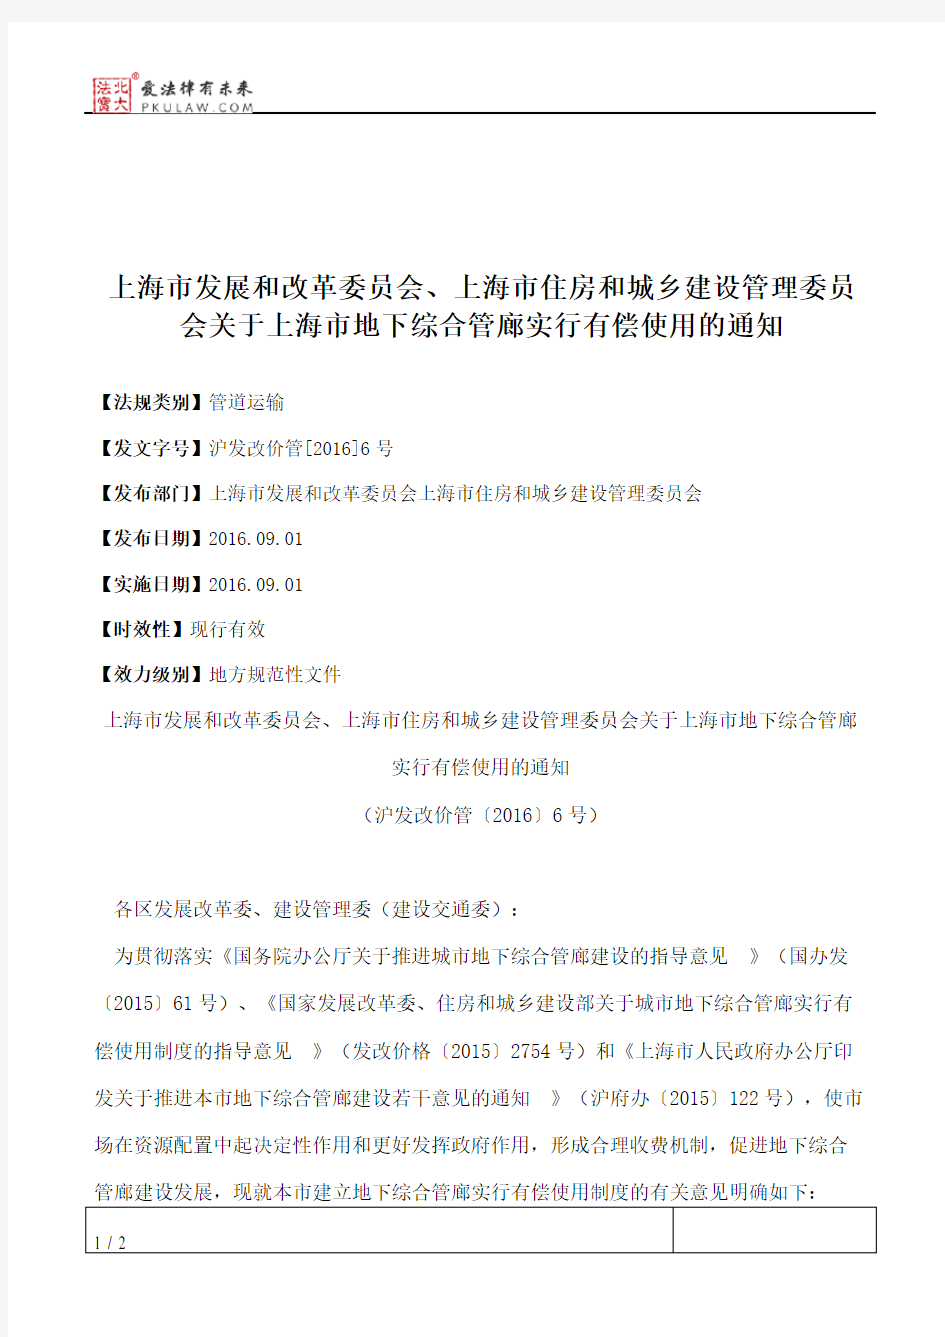 上海市发展和改革委员会、上海市住房和城乡建设管理委员会关于上